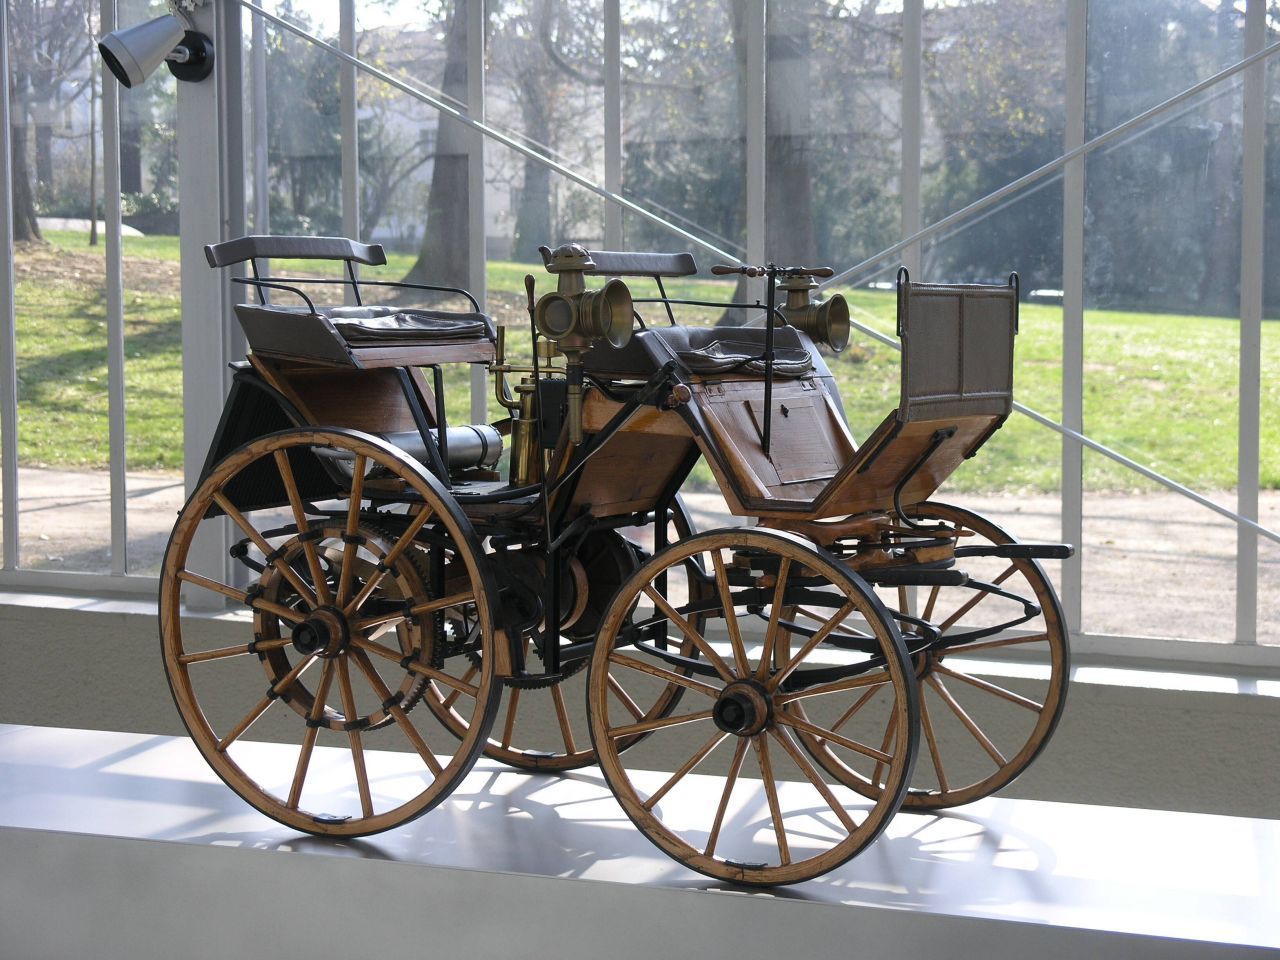 Gottlieb Daimler baute einen Motor in eine Kutsche: das erste Auto mit vier Rädern. 